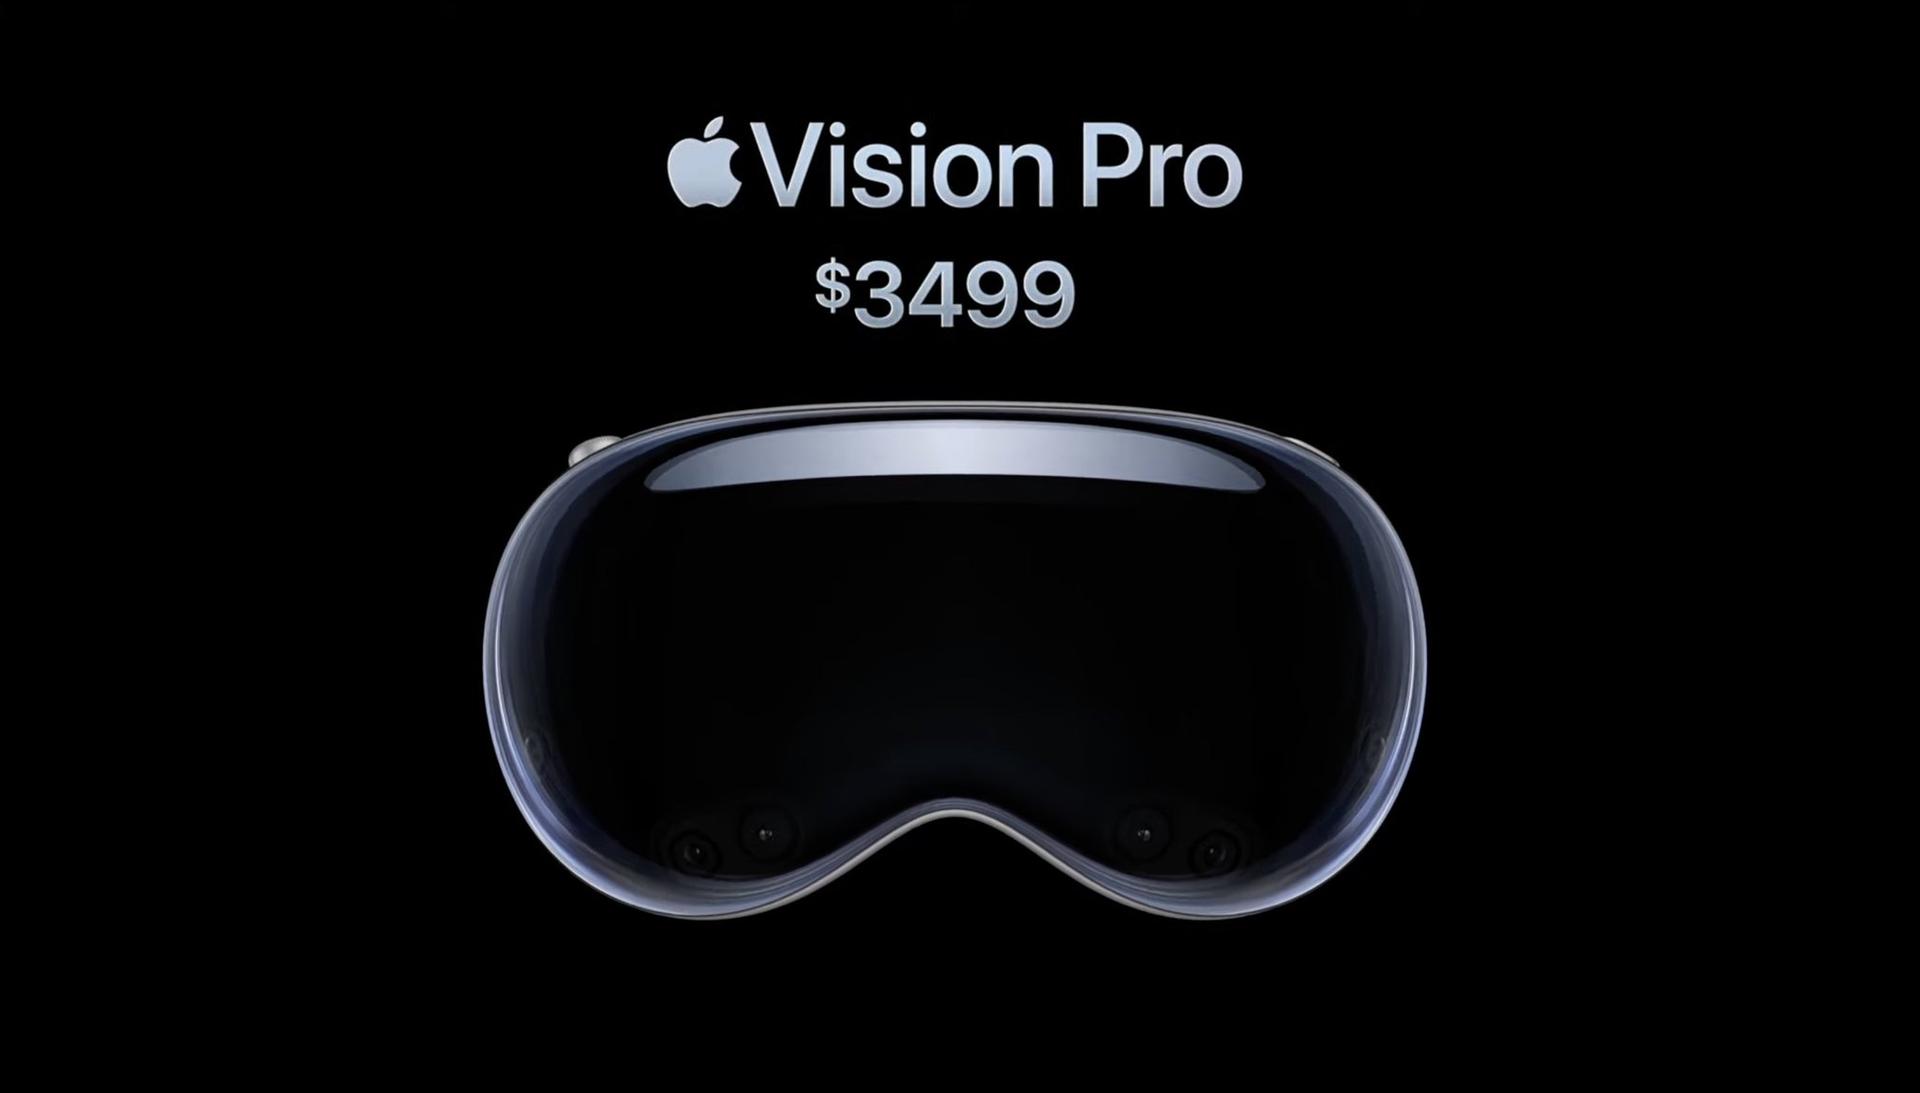 Tai nghe thực tế ảo Vision Pro của Apple ra mắt tại Mỹ